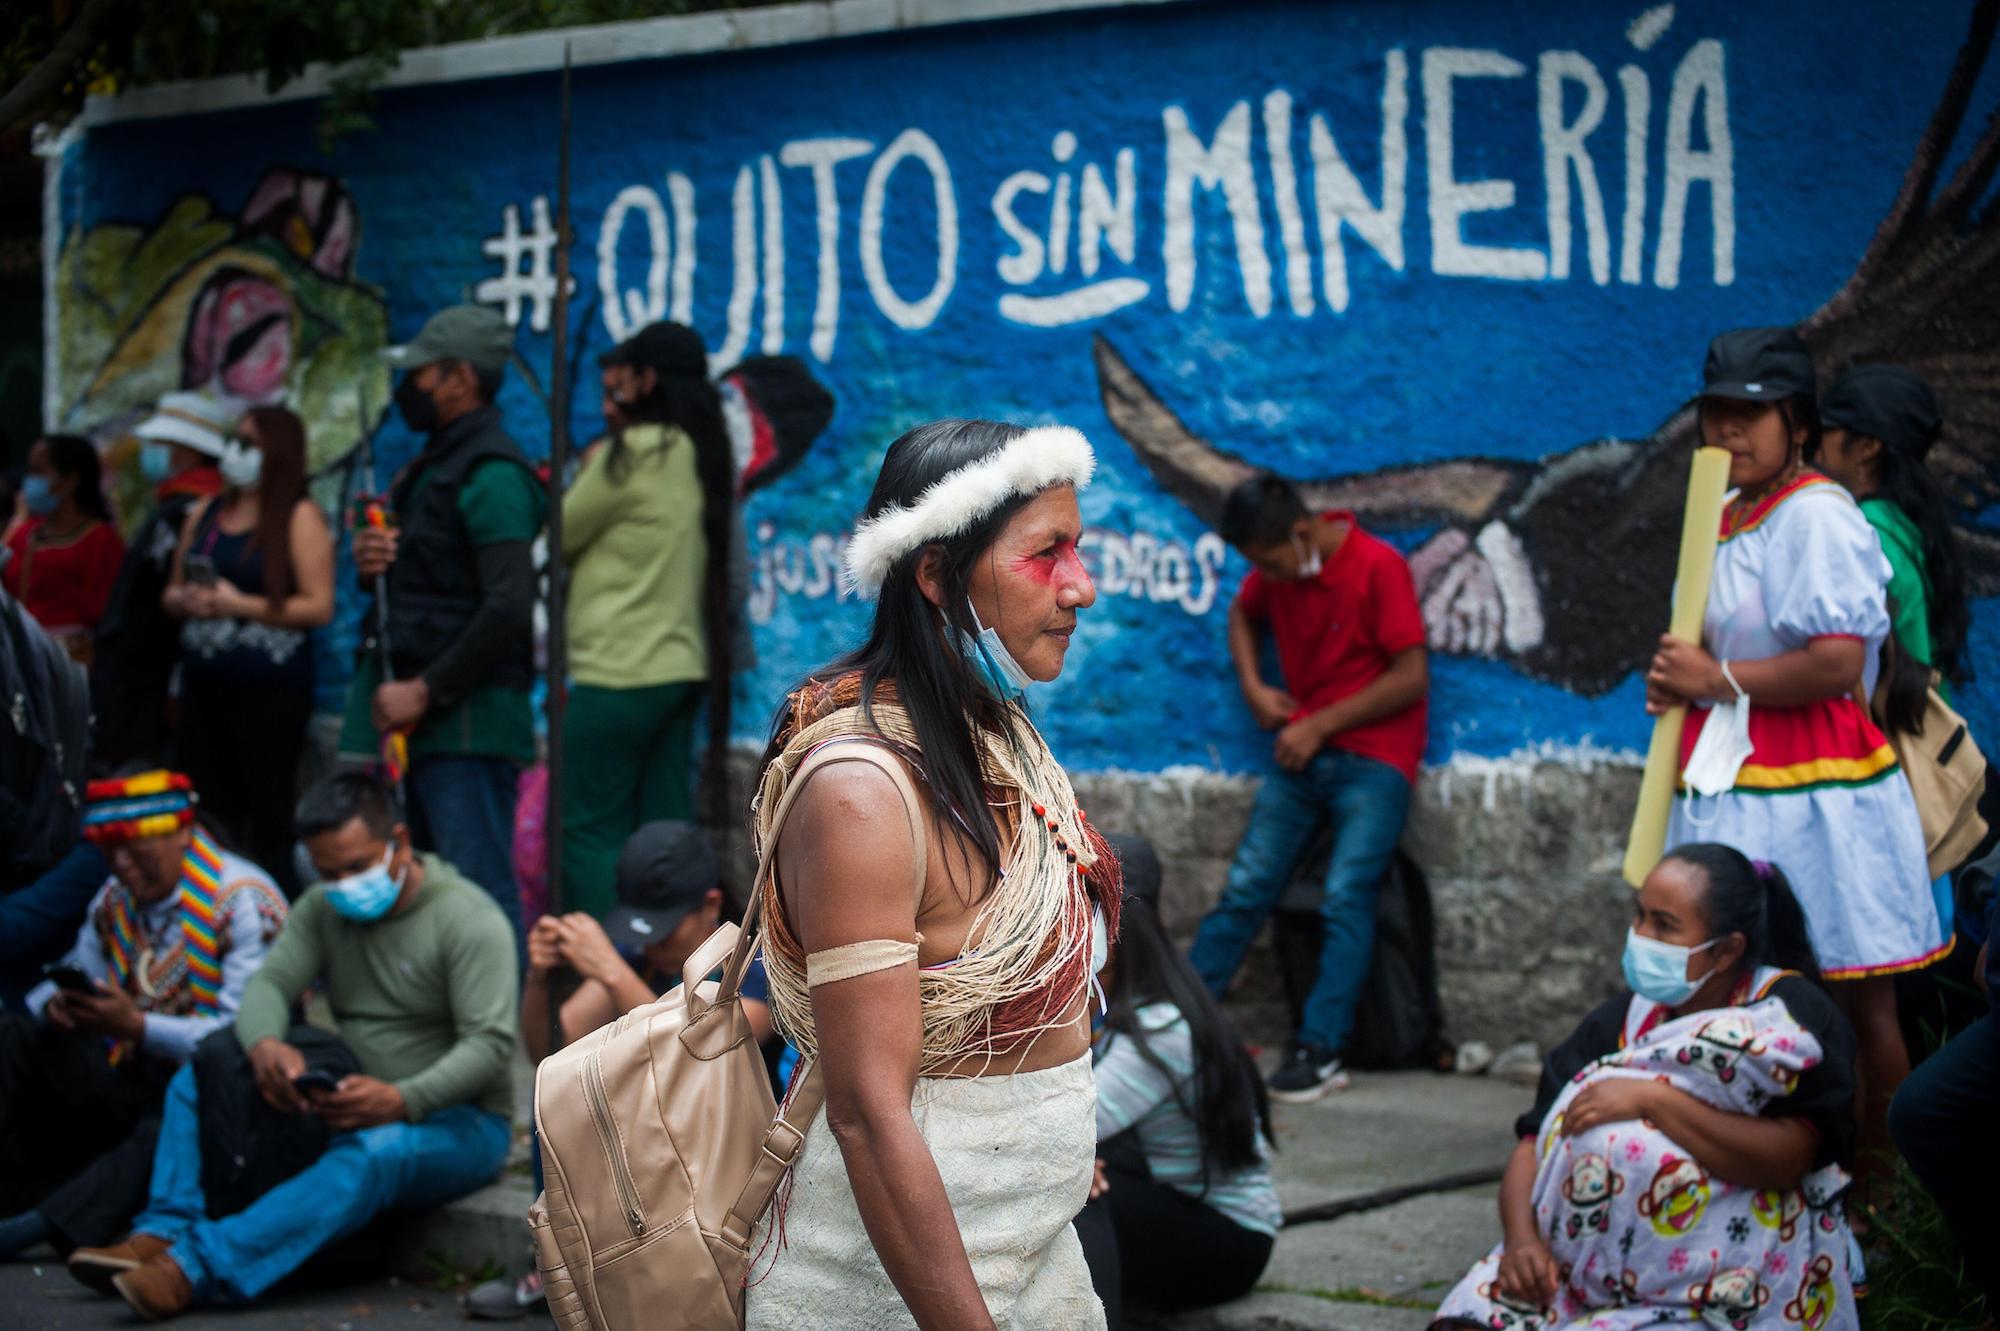 <p>#QuitoSinMinería escrito en un muro durante una protesta de comunidades indígenas en Quito, Ecuador. El Acuerdo de Escazú busca garantizar los derechos de acceso a la información, participación pública y justicia en materia medioambiental (Imagen: Juan Diego Montenegro / Alamy)</p>